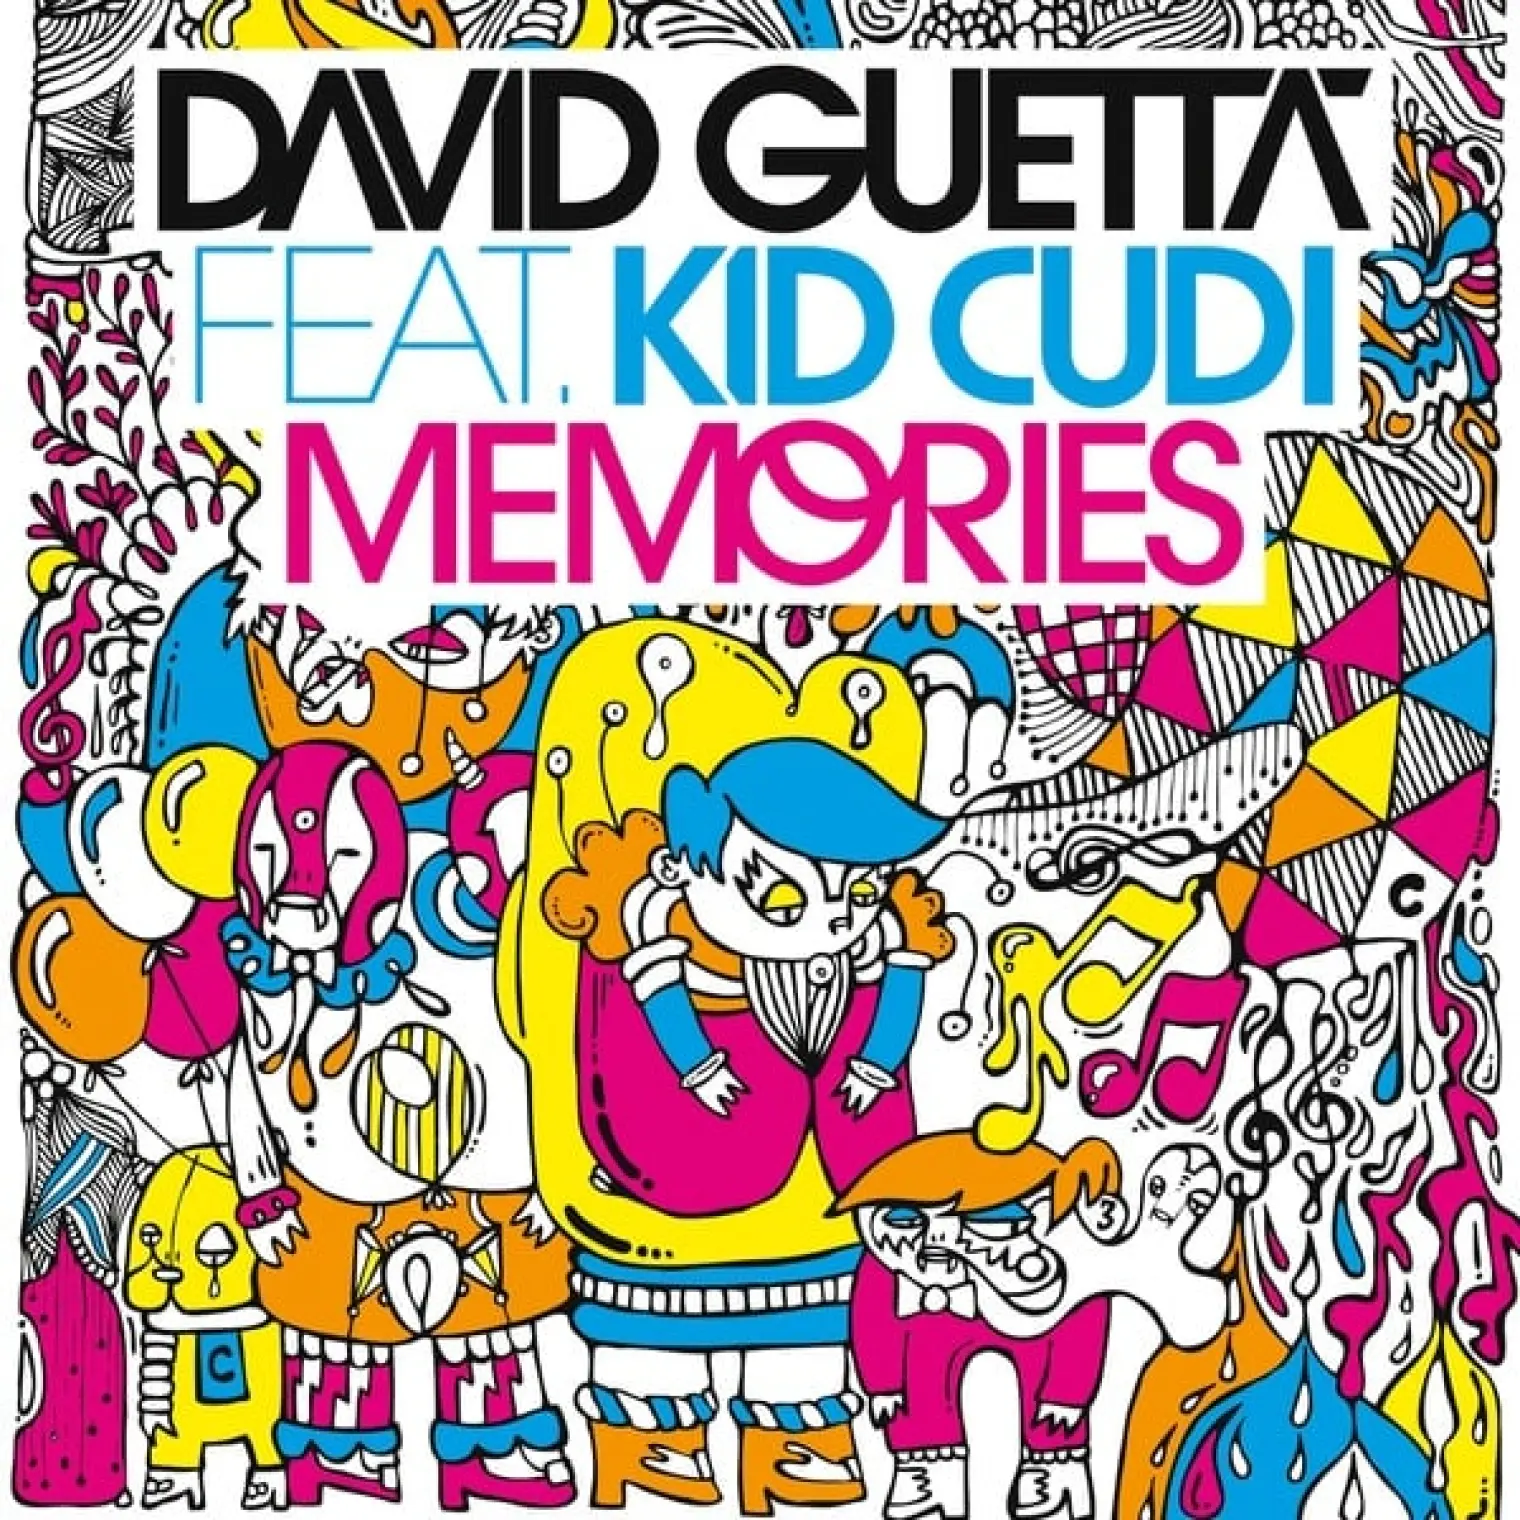 Memories (feat. Kid Cudi) -  David Guetta 